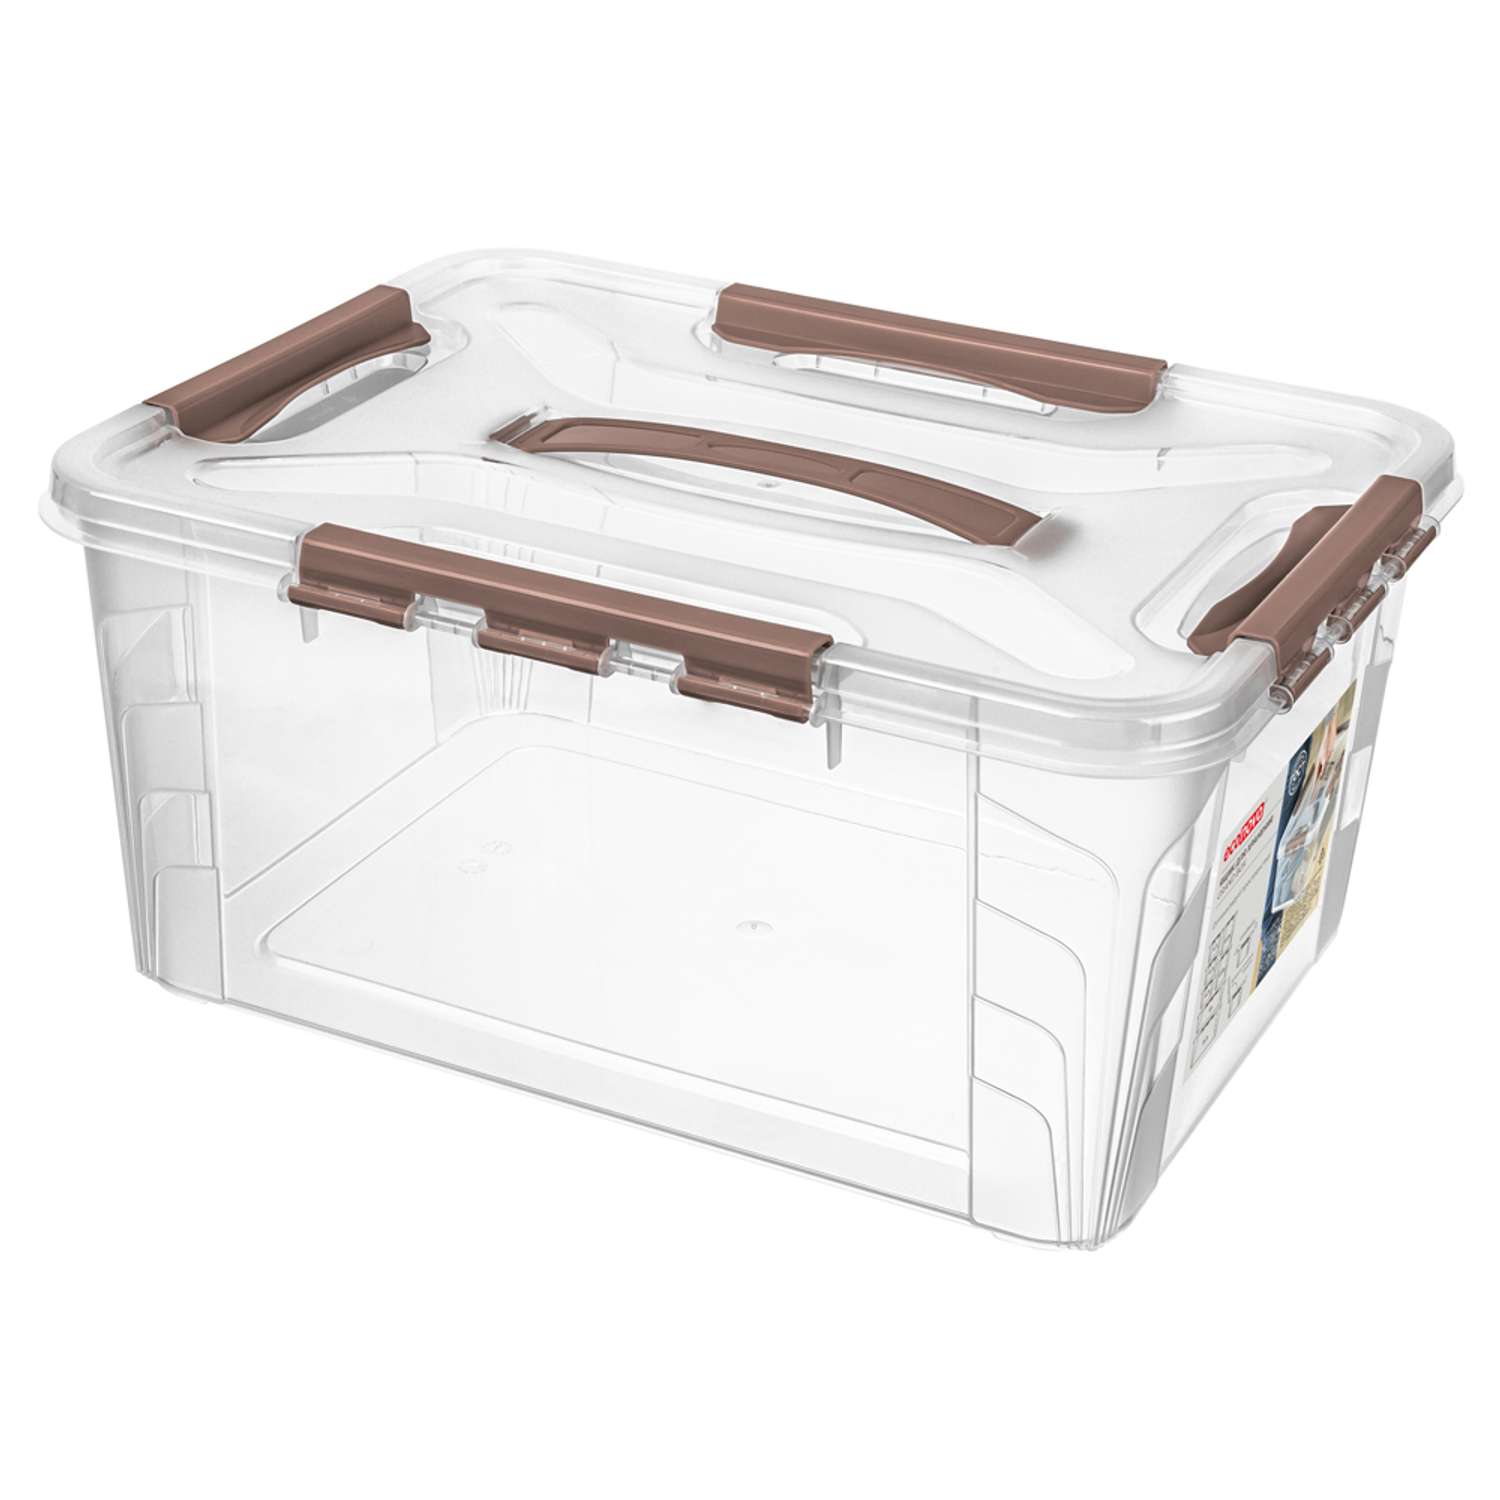 Ящик для хранения Econova универсальный с замками и ручкой Grand Box 15300 мл коричневый - фото 1